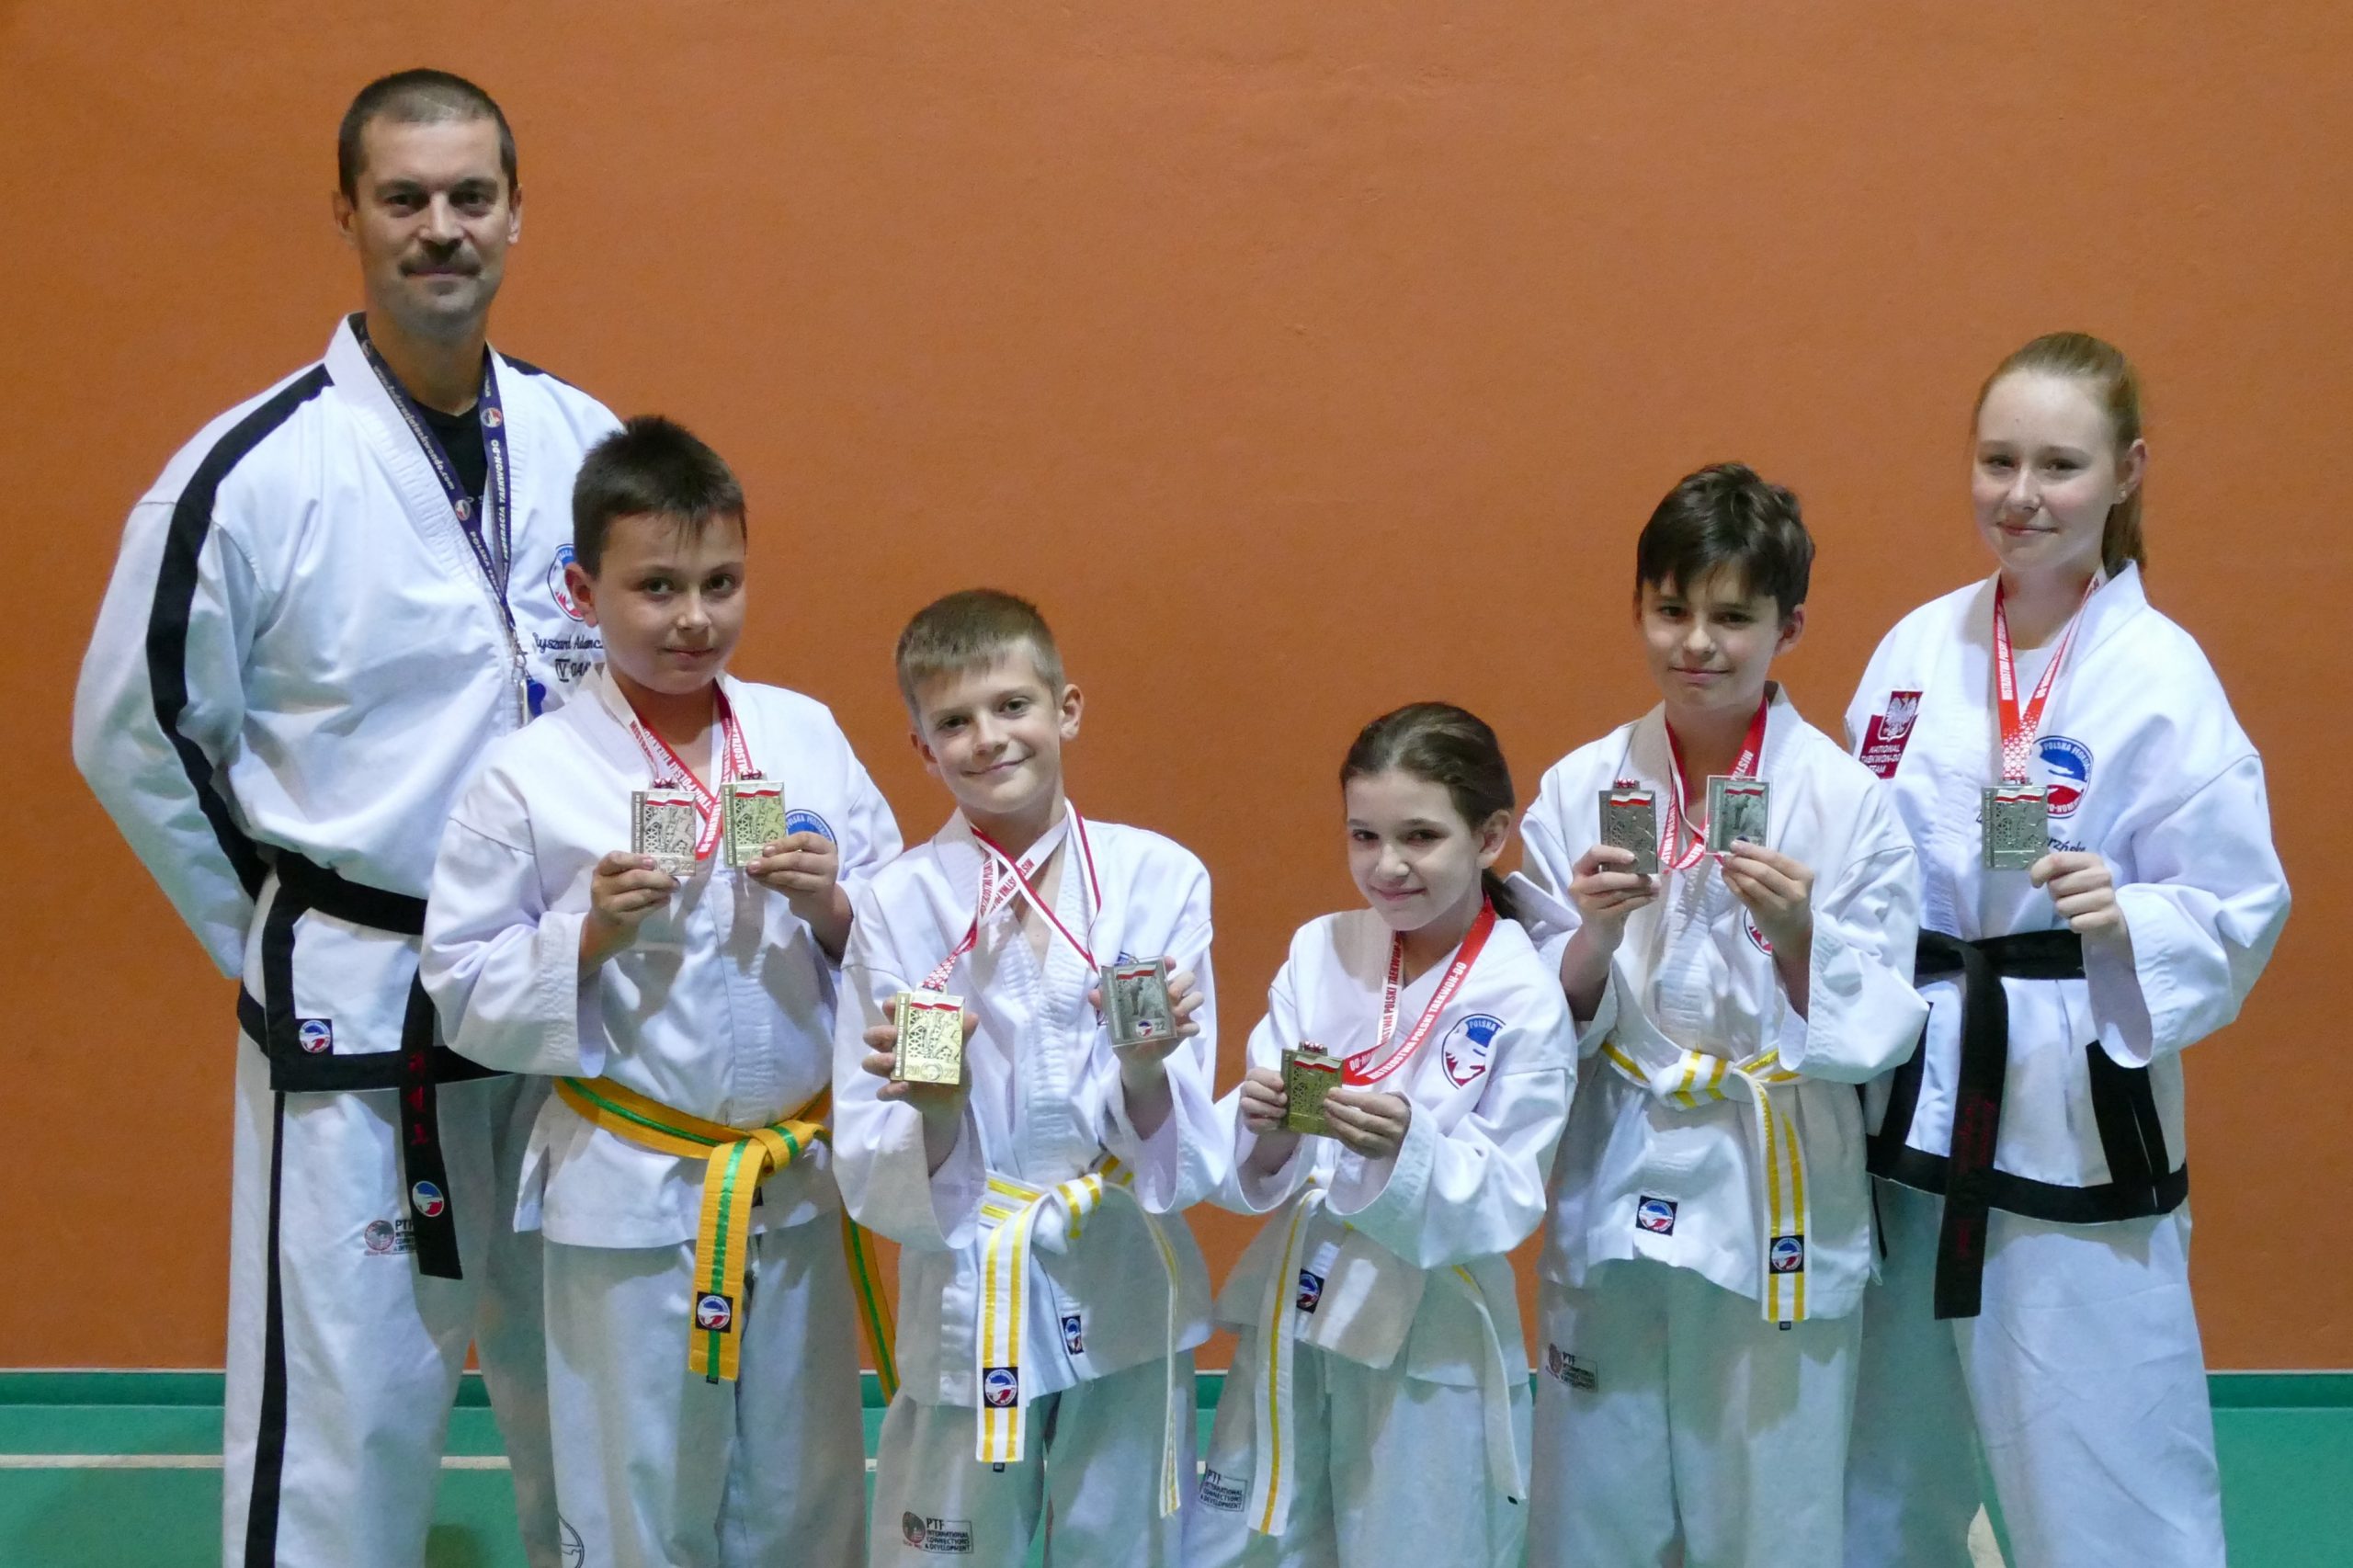 Medale i doświadczenie z Mistrzostw Polski Federacji Taekwon-do